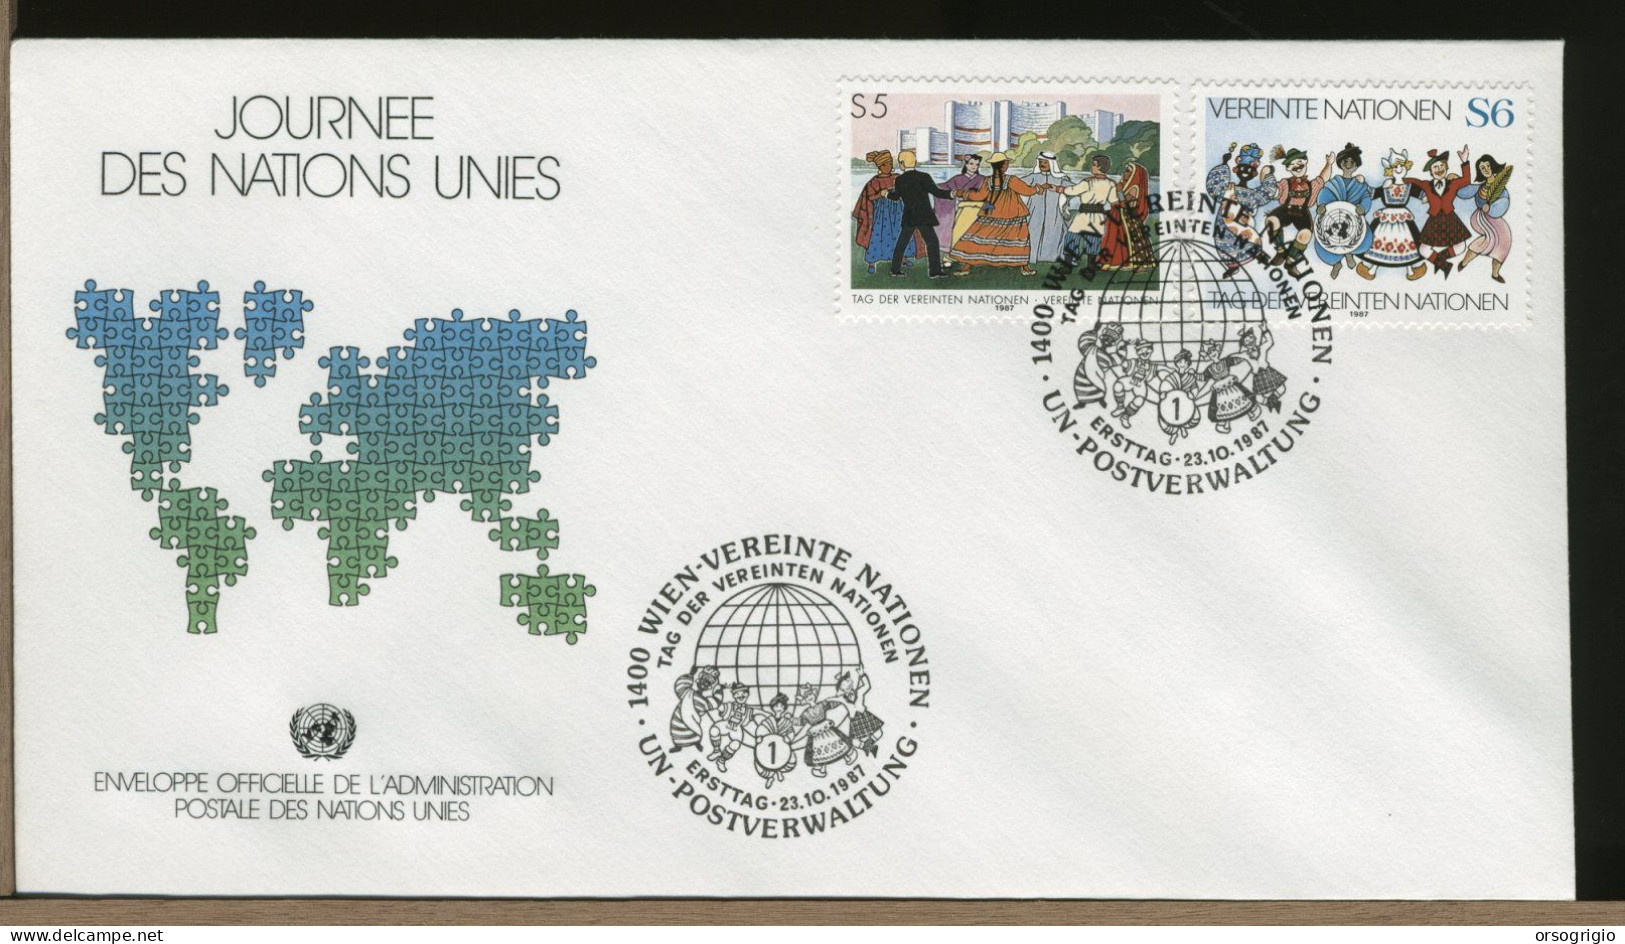 ONU - UNITED NATIONS - FDC 1987 - Gemeinschaftsausgaben New York/Genf/Wien